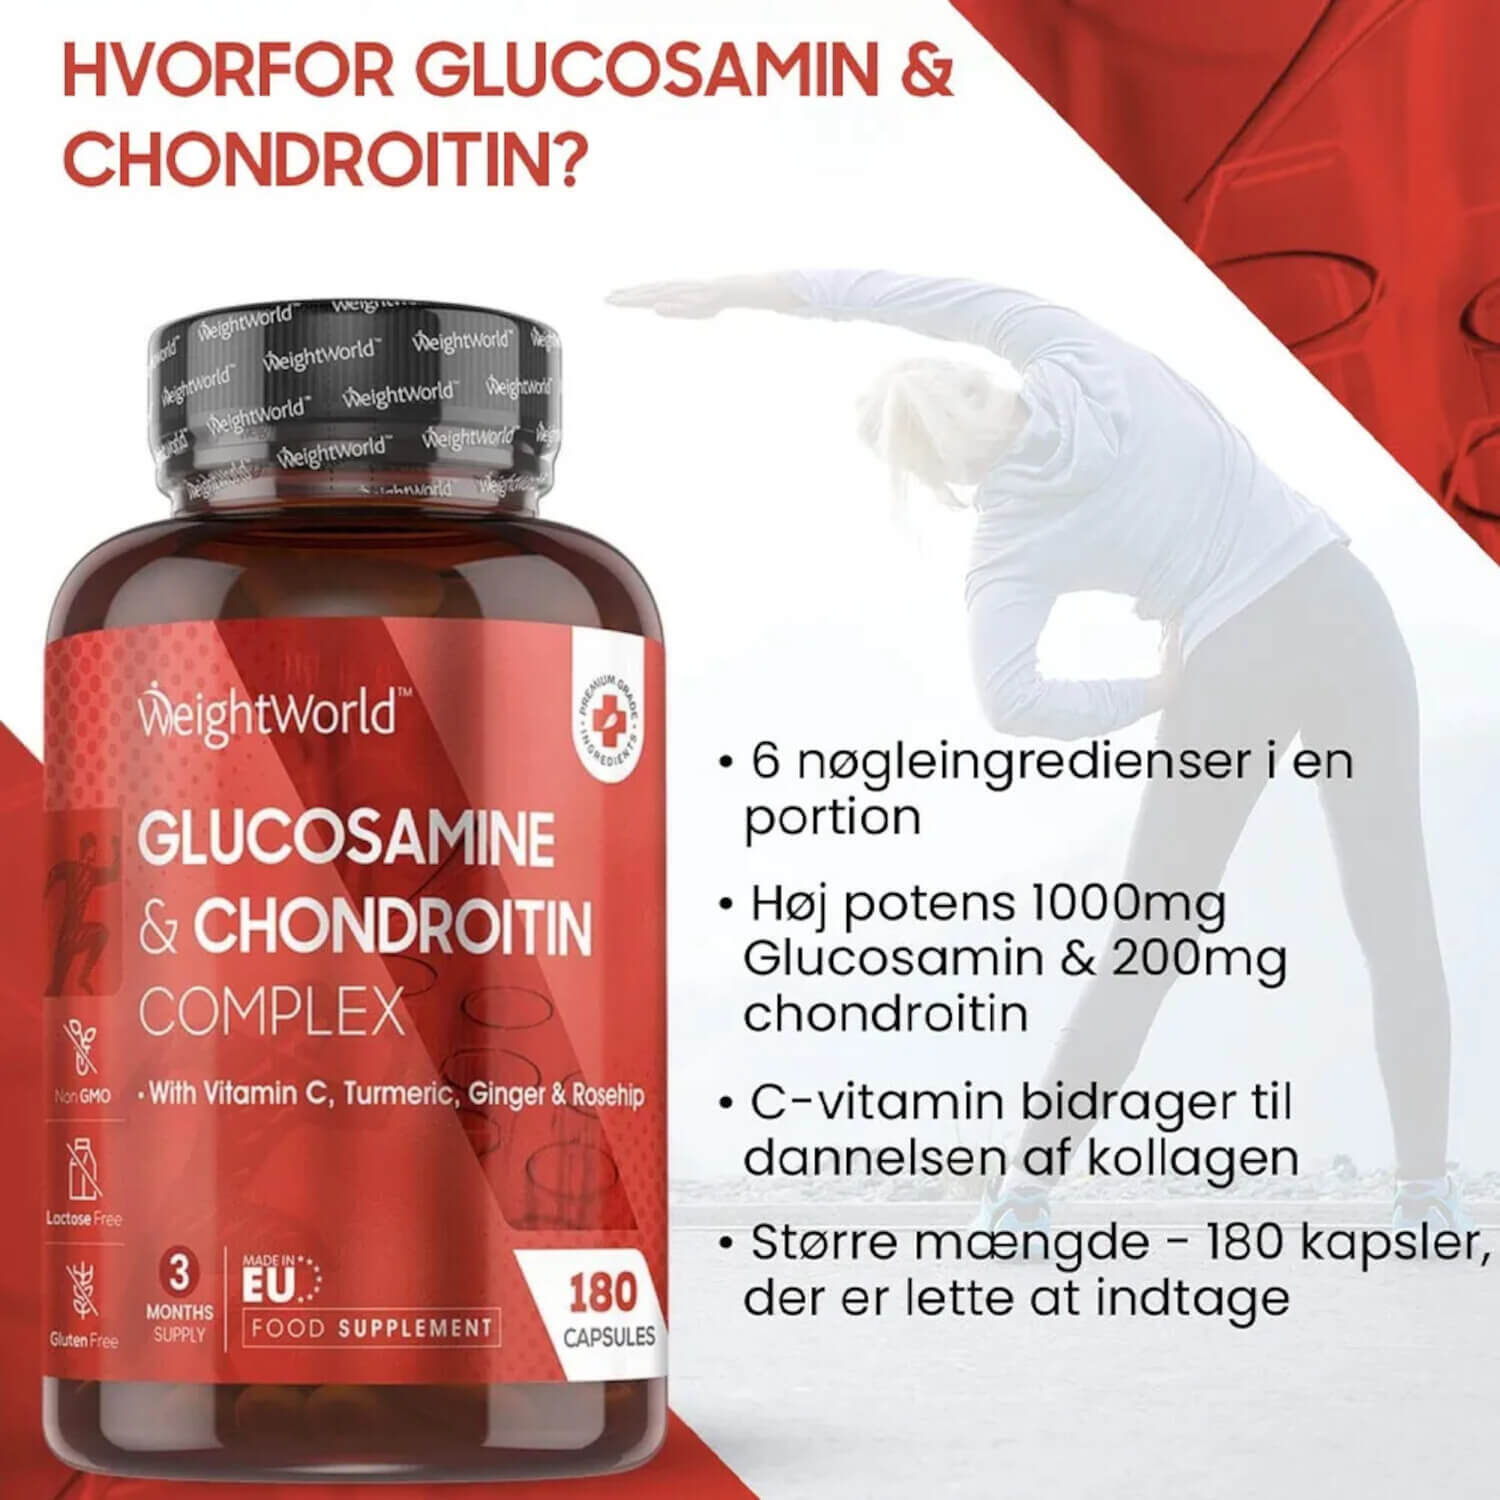 Hvad er glucosamine og chondroitin?